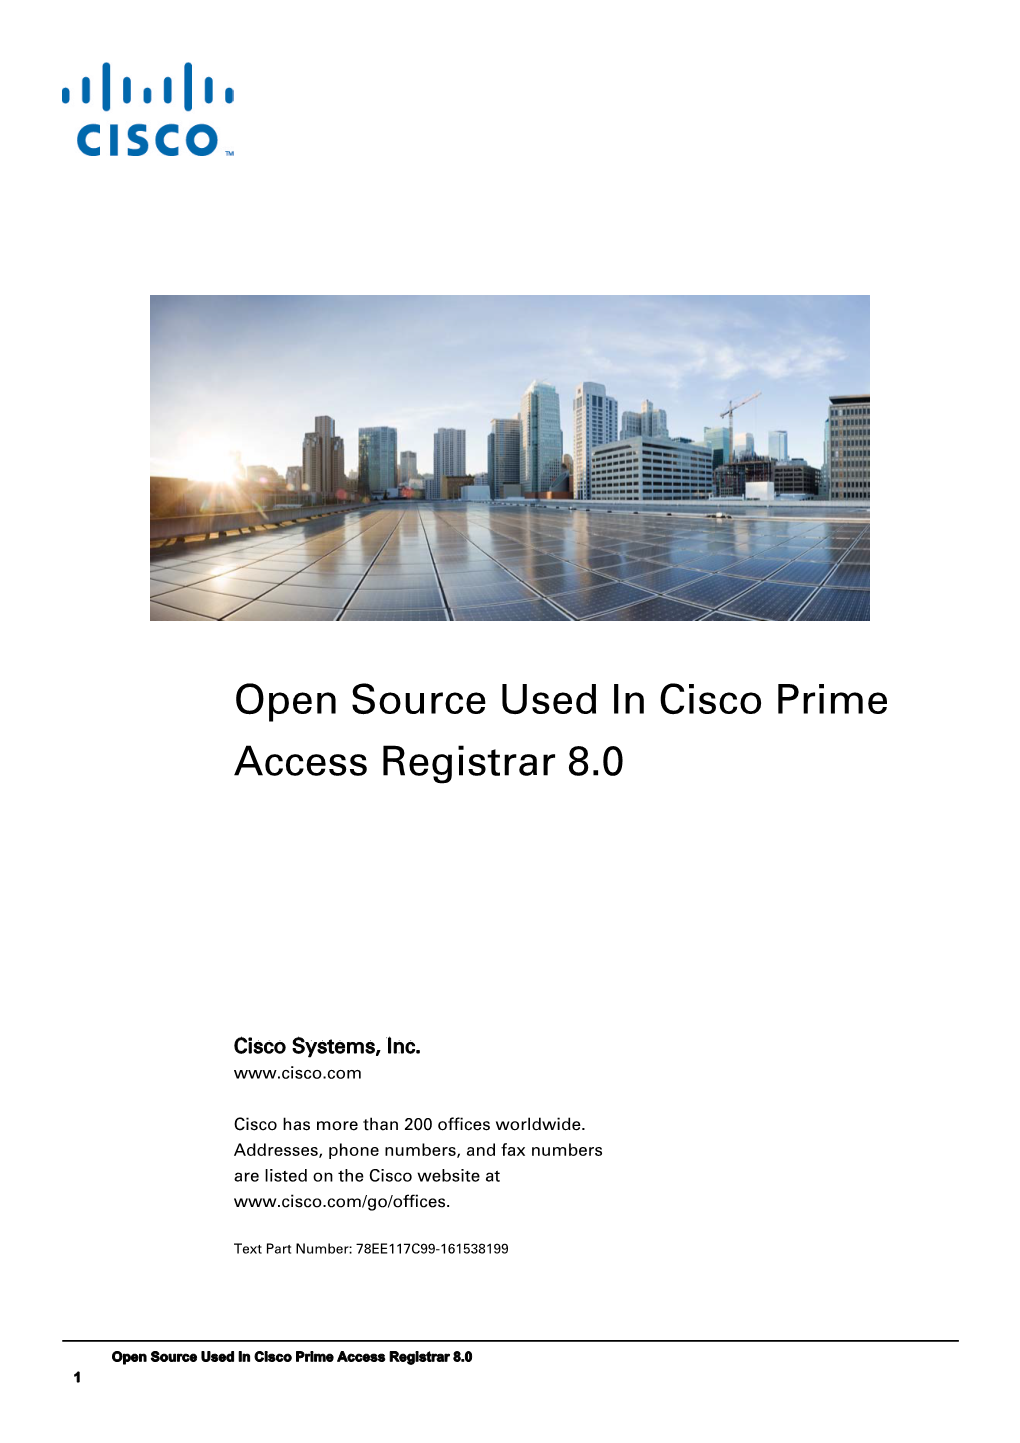 Open Source Used in Cisco Prime Access Registrar 8.0